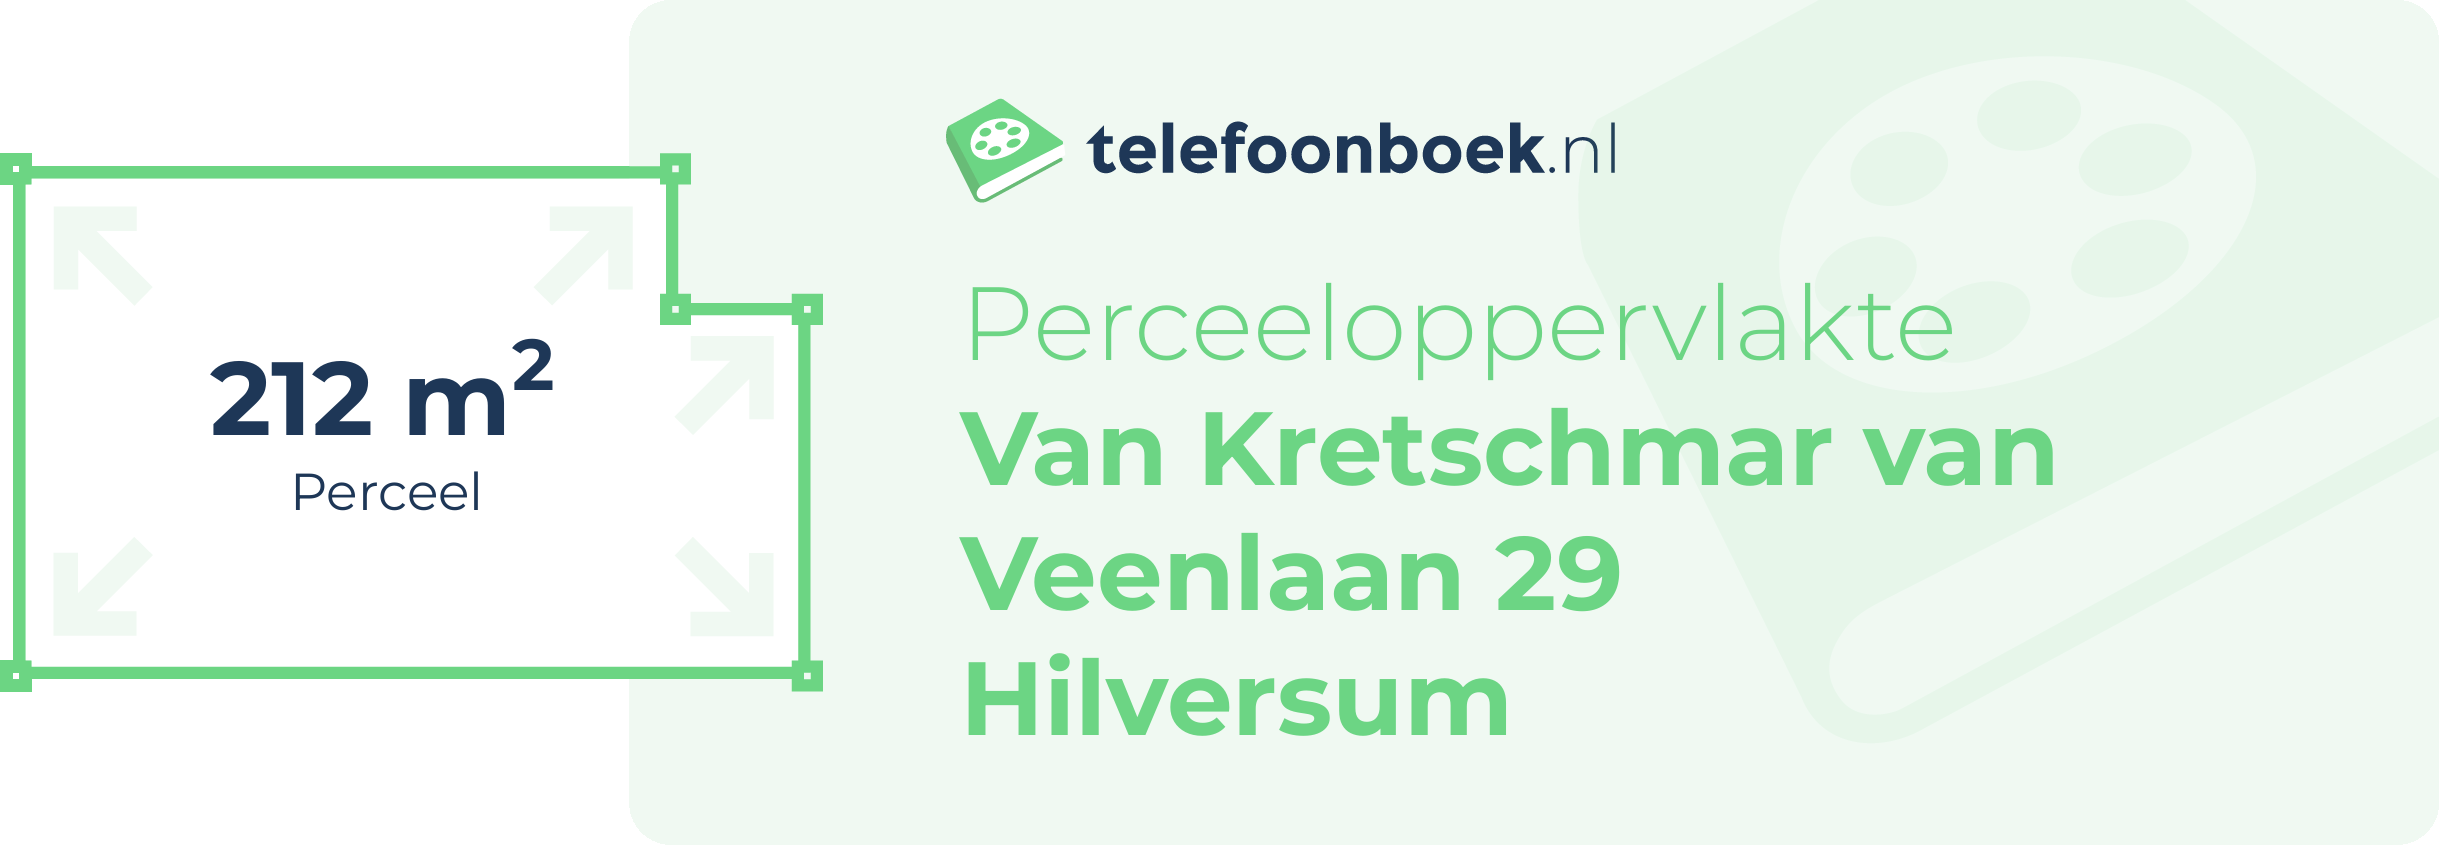 Perceeloppervlakte Van Kretschmar Van Veenlaan 29 Hilversum